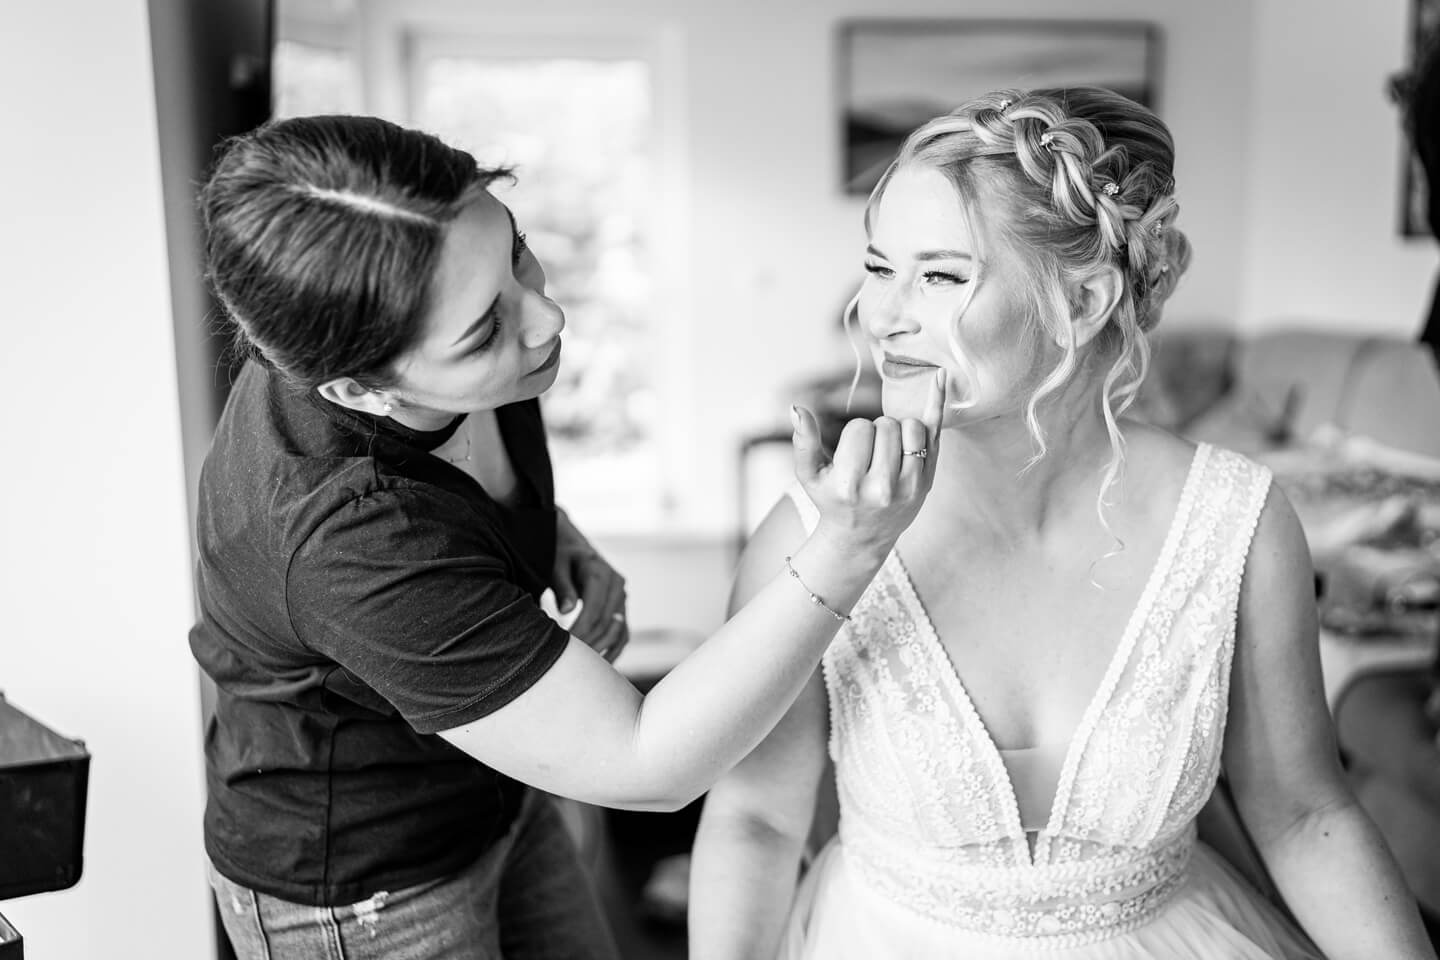 Schminken der Braut begleitet durch Fotograf Florian Läufer, der eine professionelle Hochzeitsreportage erstellte.